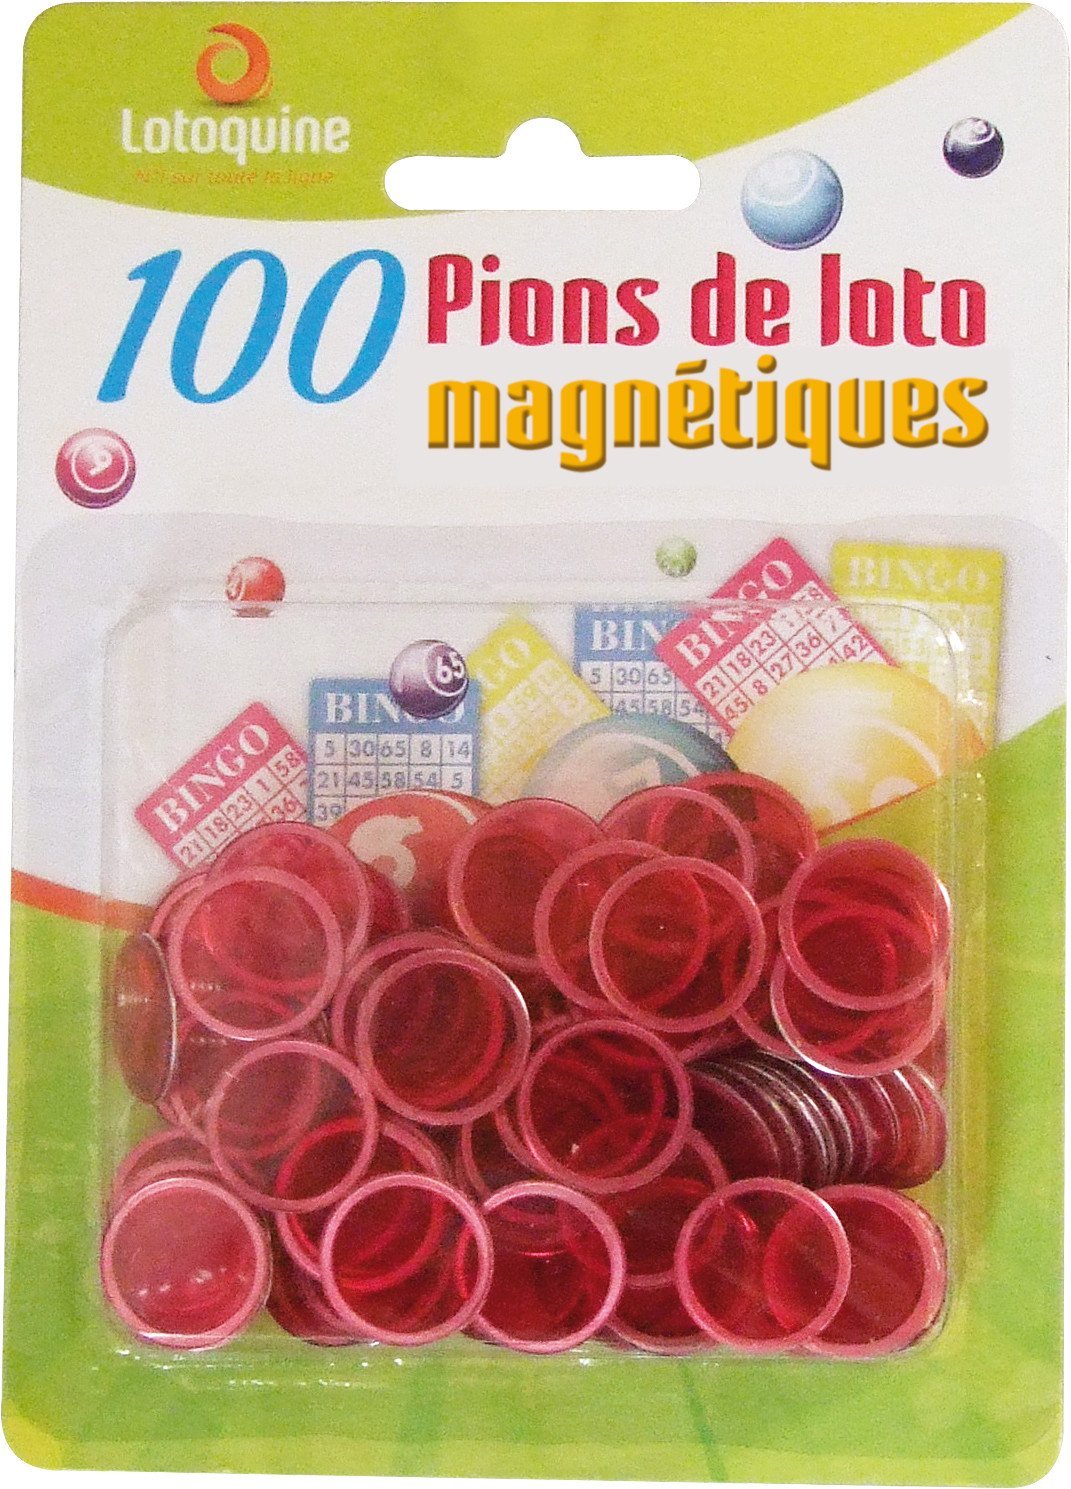 https://m.caverne-des-jouets.com/ori-100-pions-magnetiques-rouge-lotoquine-accessoire-loto-3533.jpg